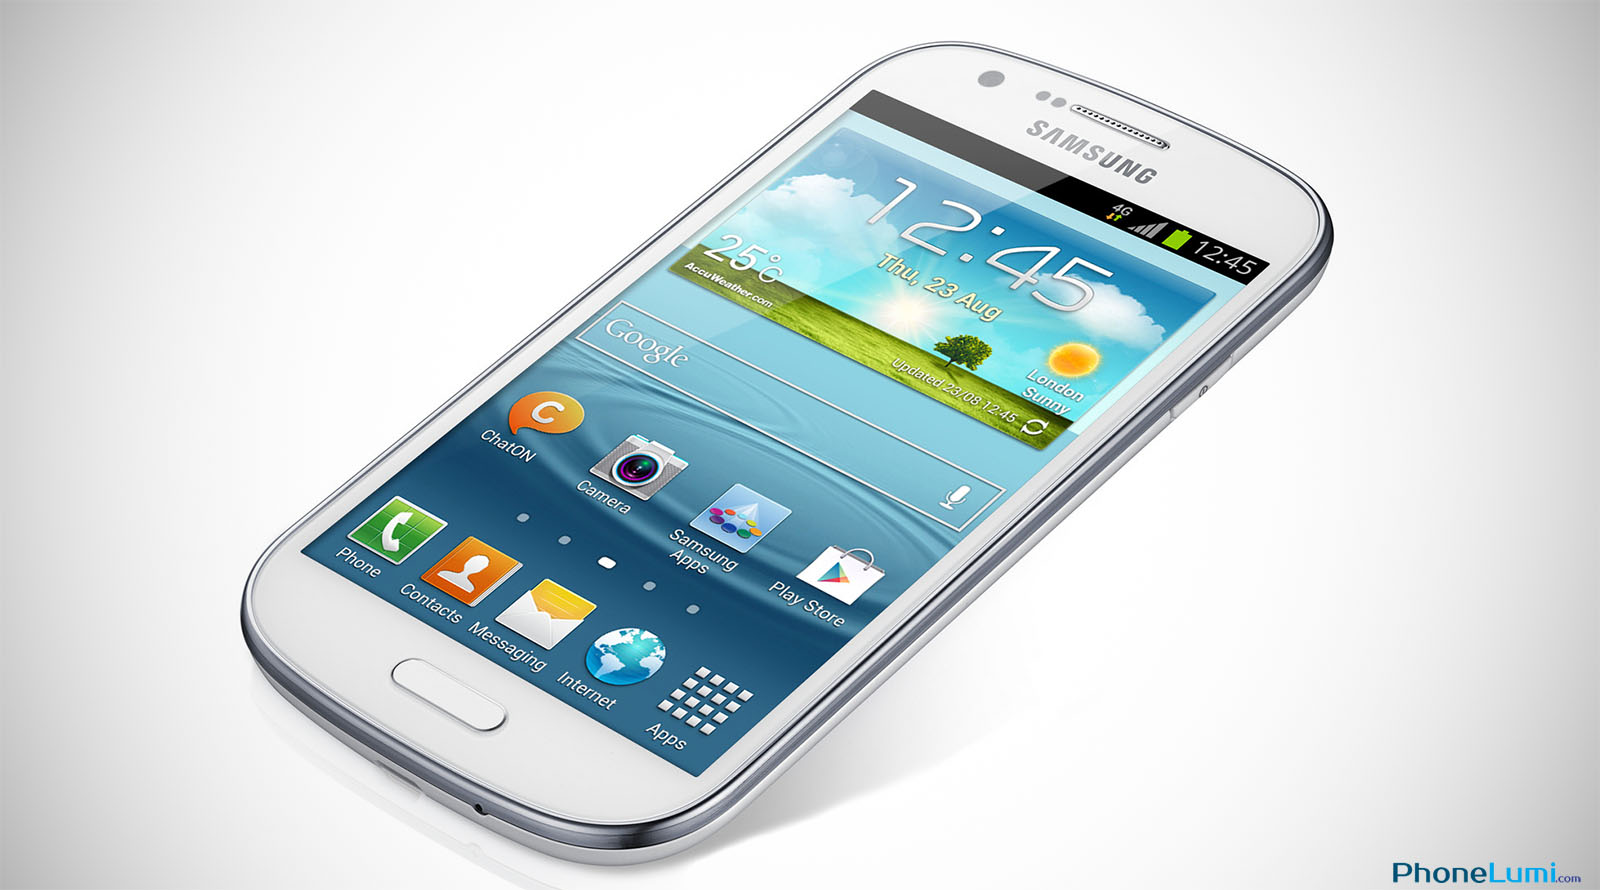 Samsung Galaxy Express I8730 schematics